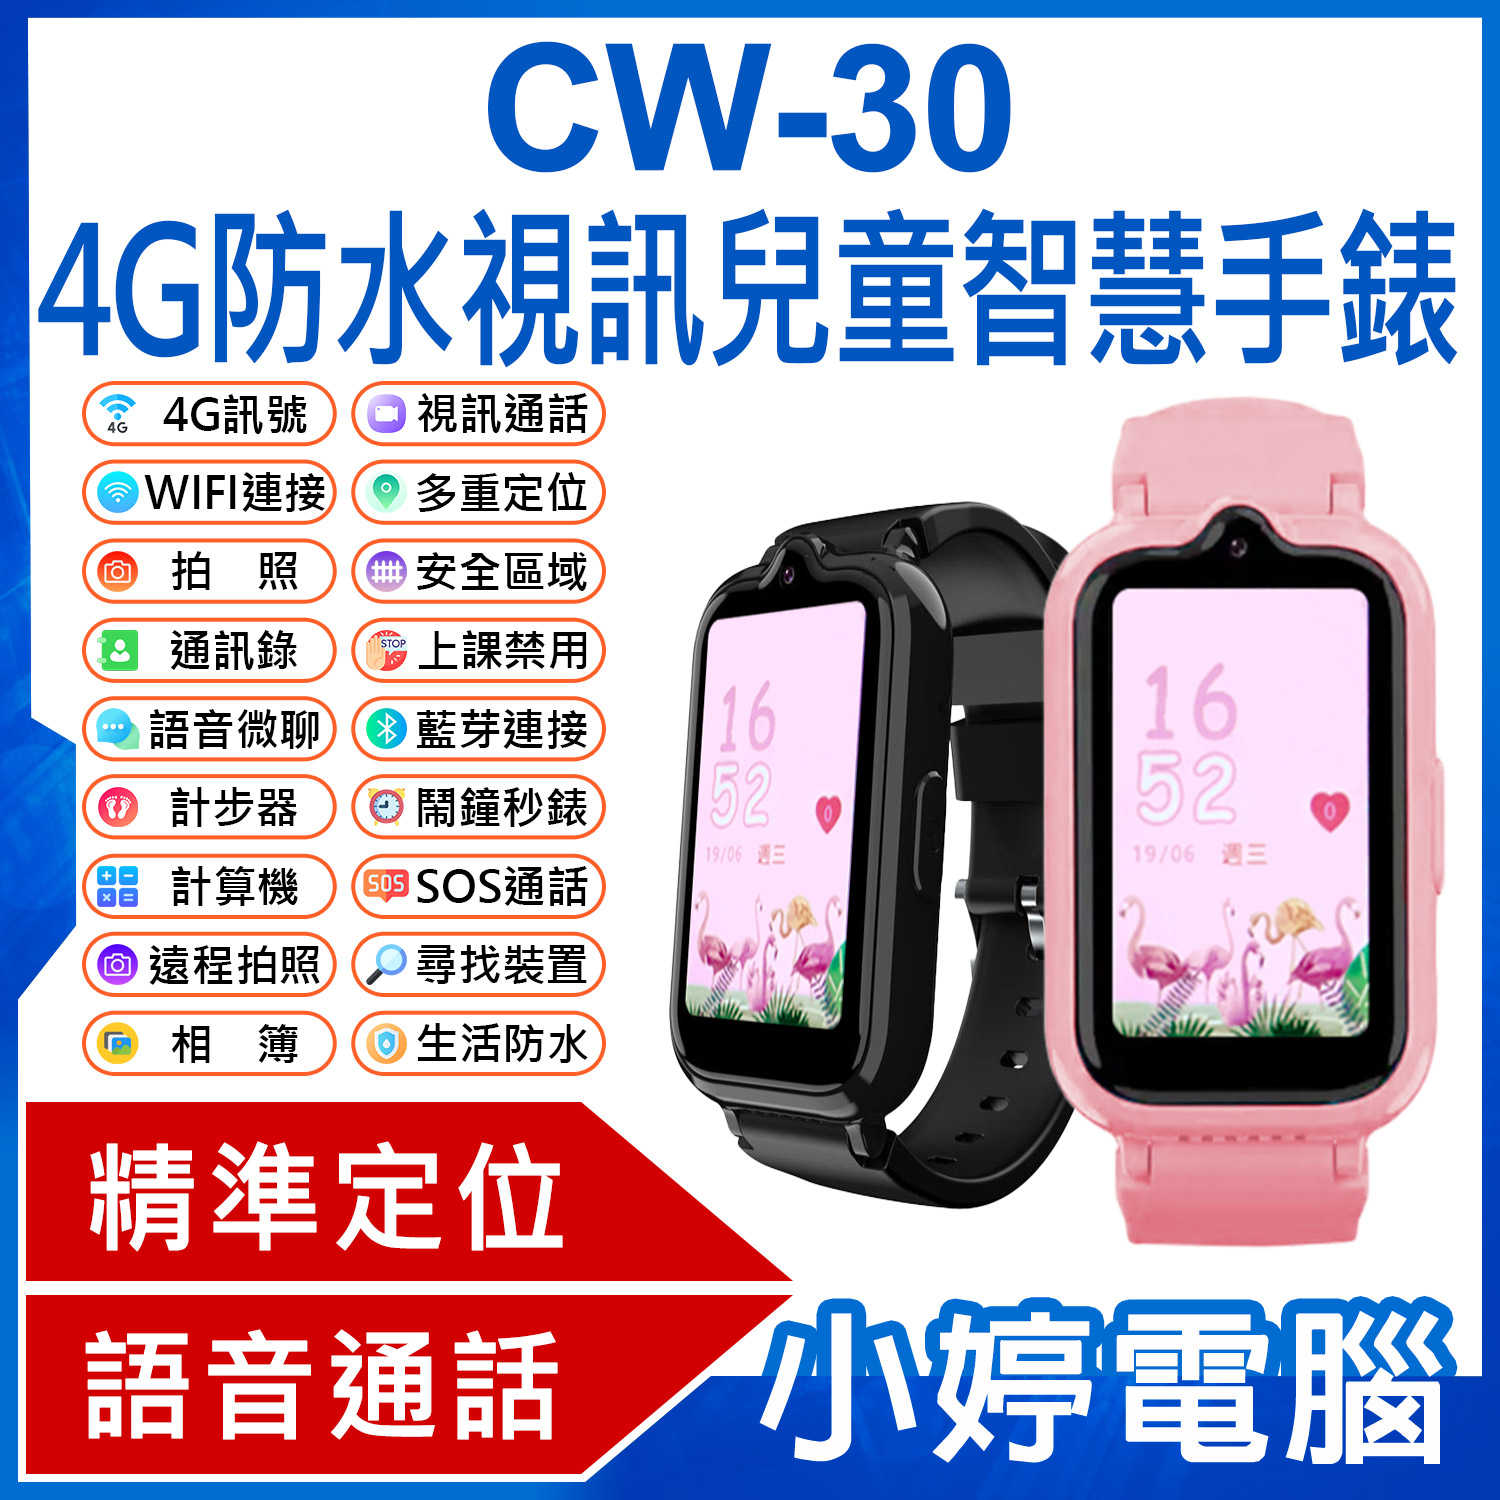 【小婷電腦】CW-30 4G防水視訊兒童智慧手錶 繁中版 視訊通話 遠程拍照 IP67防水 精準定位 上